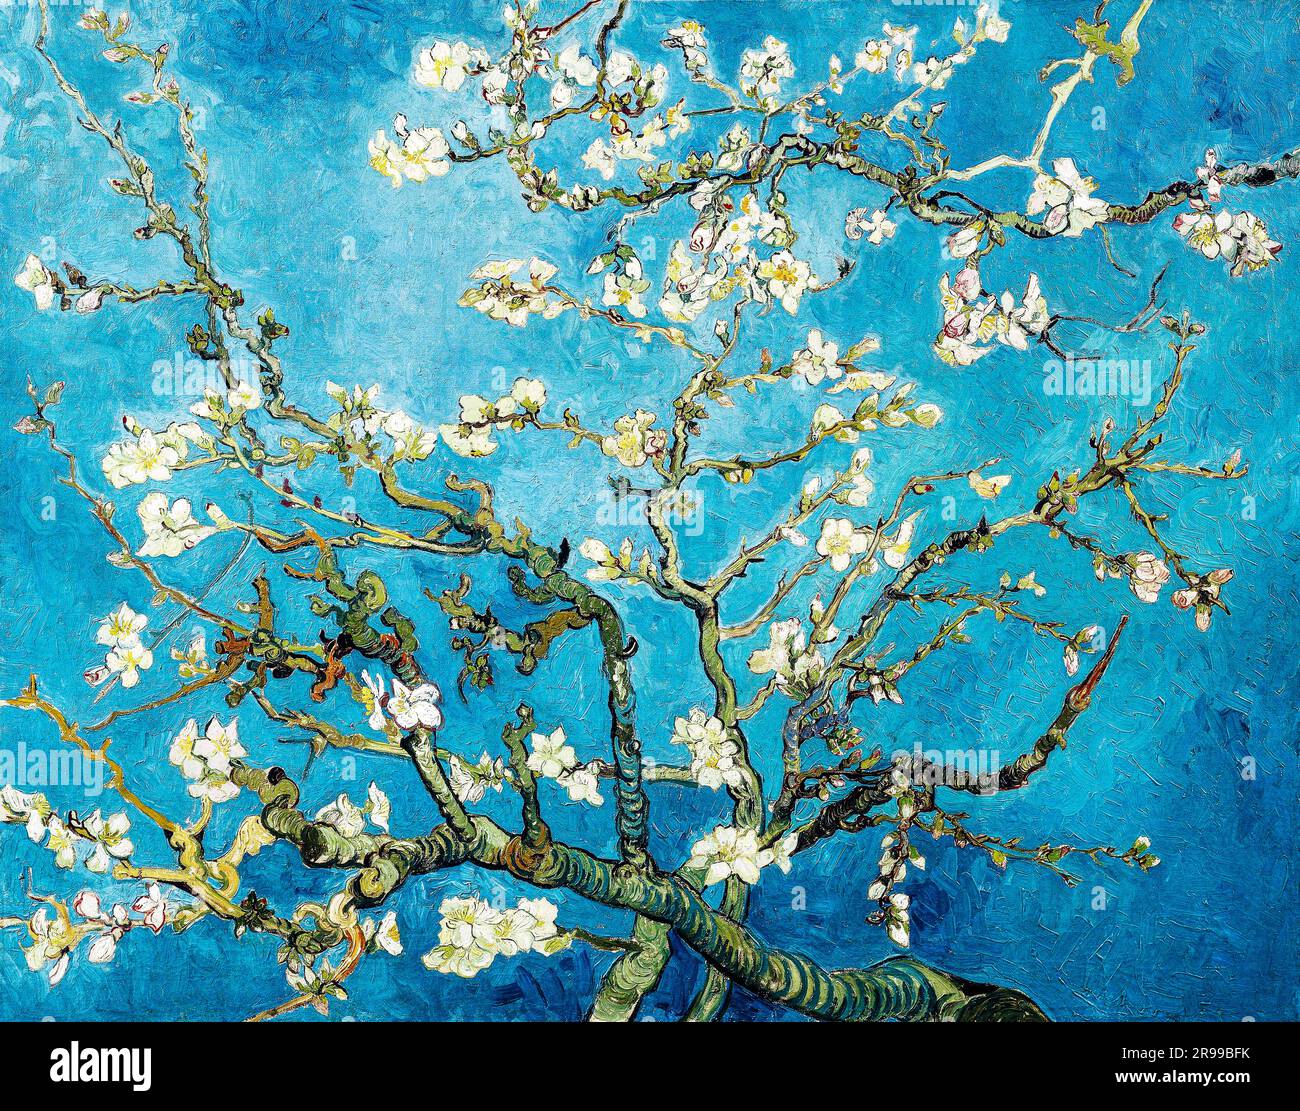 L'amande de Vincent van Gogh fleurira la célèbre peinture. Original de Wikimedia Commons. Banque D'Images